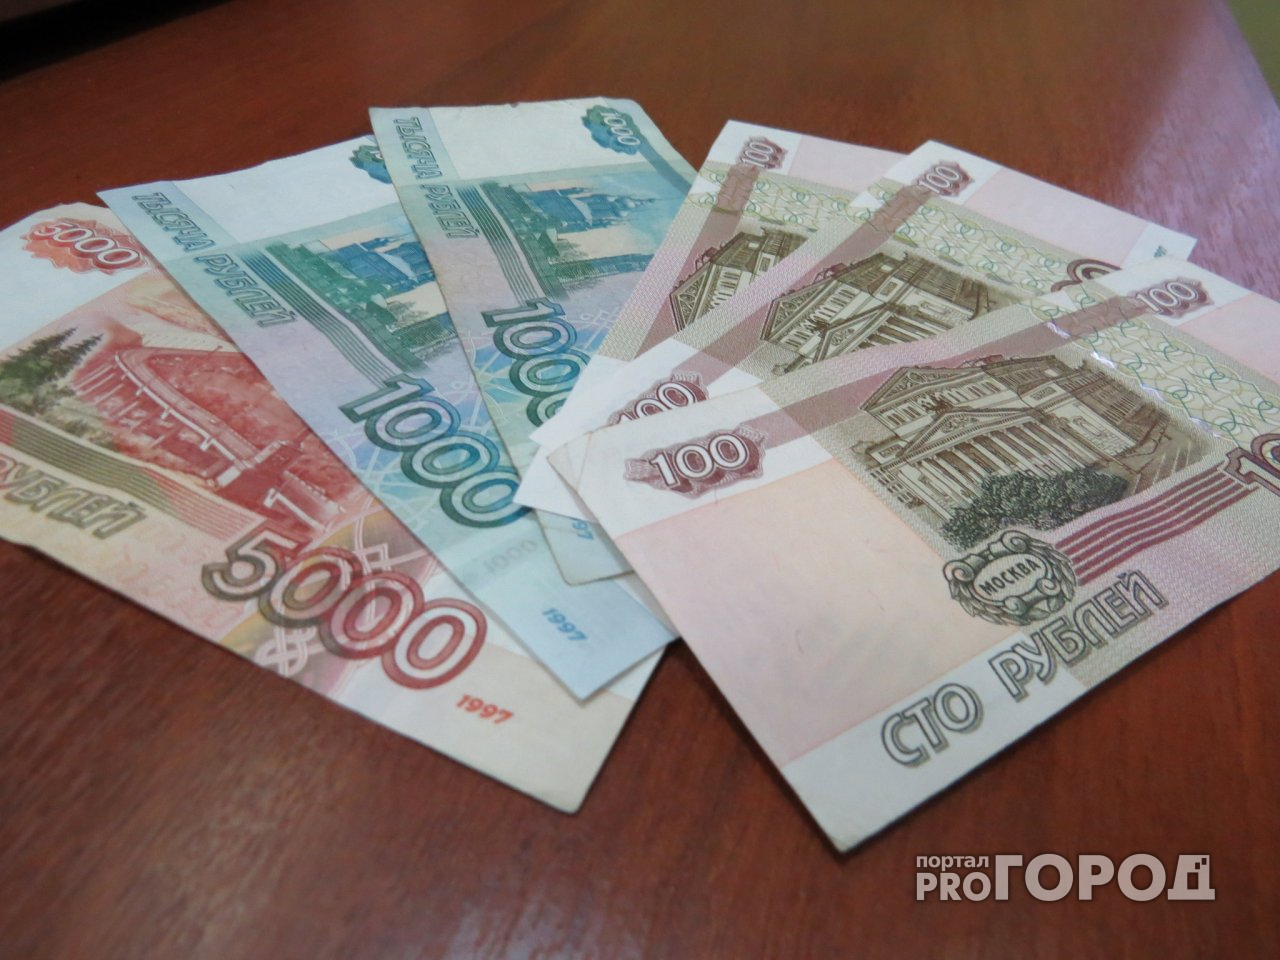 Директор ДК в Городецком районе получала зарплату за фиктивного работника